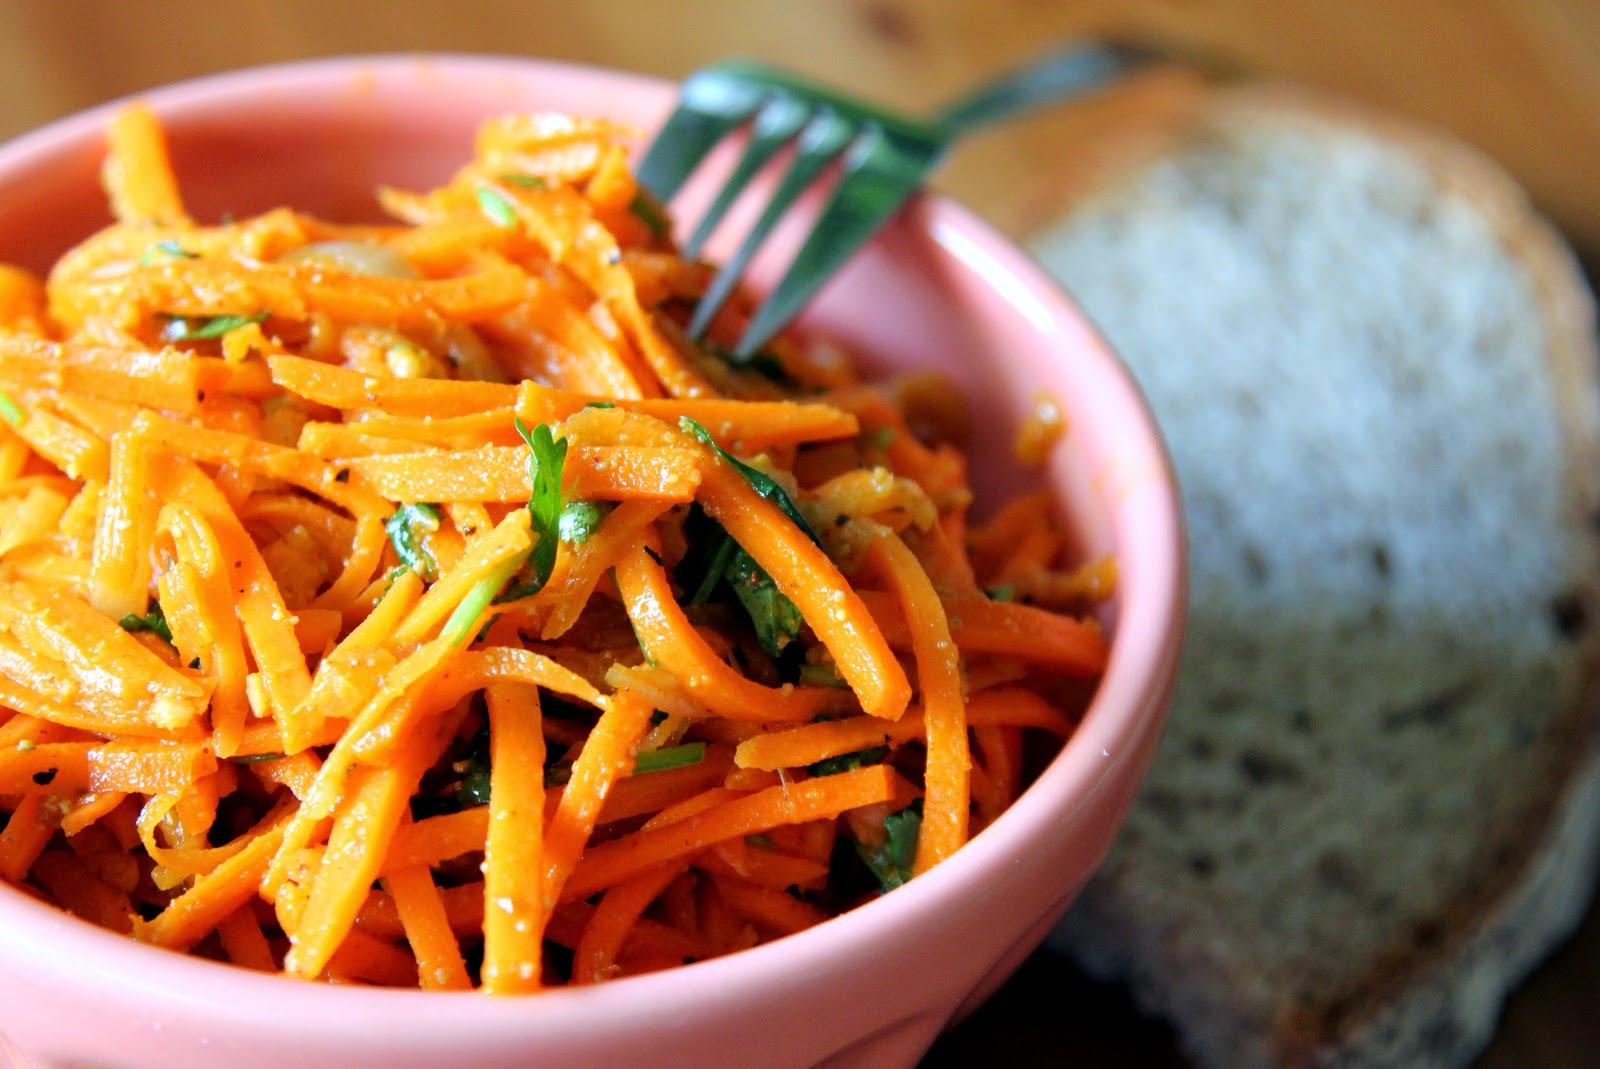 Как приготовить сочную и ароматную морковь по-корейски